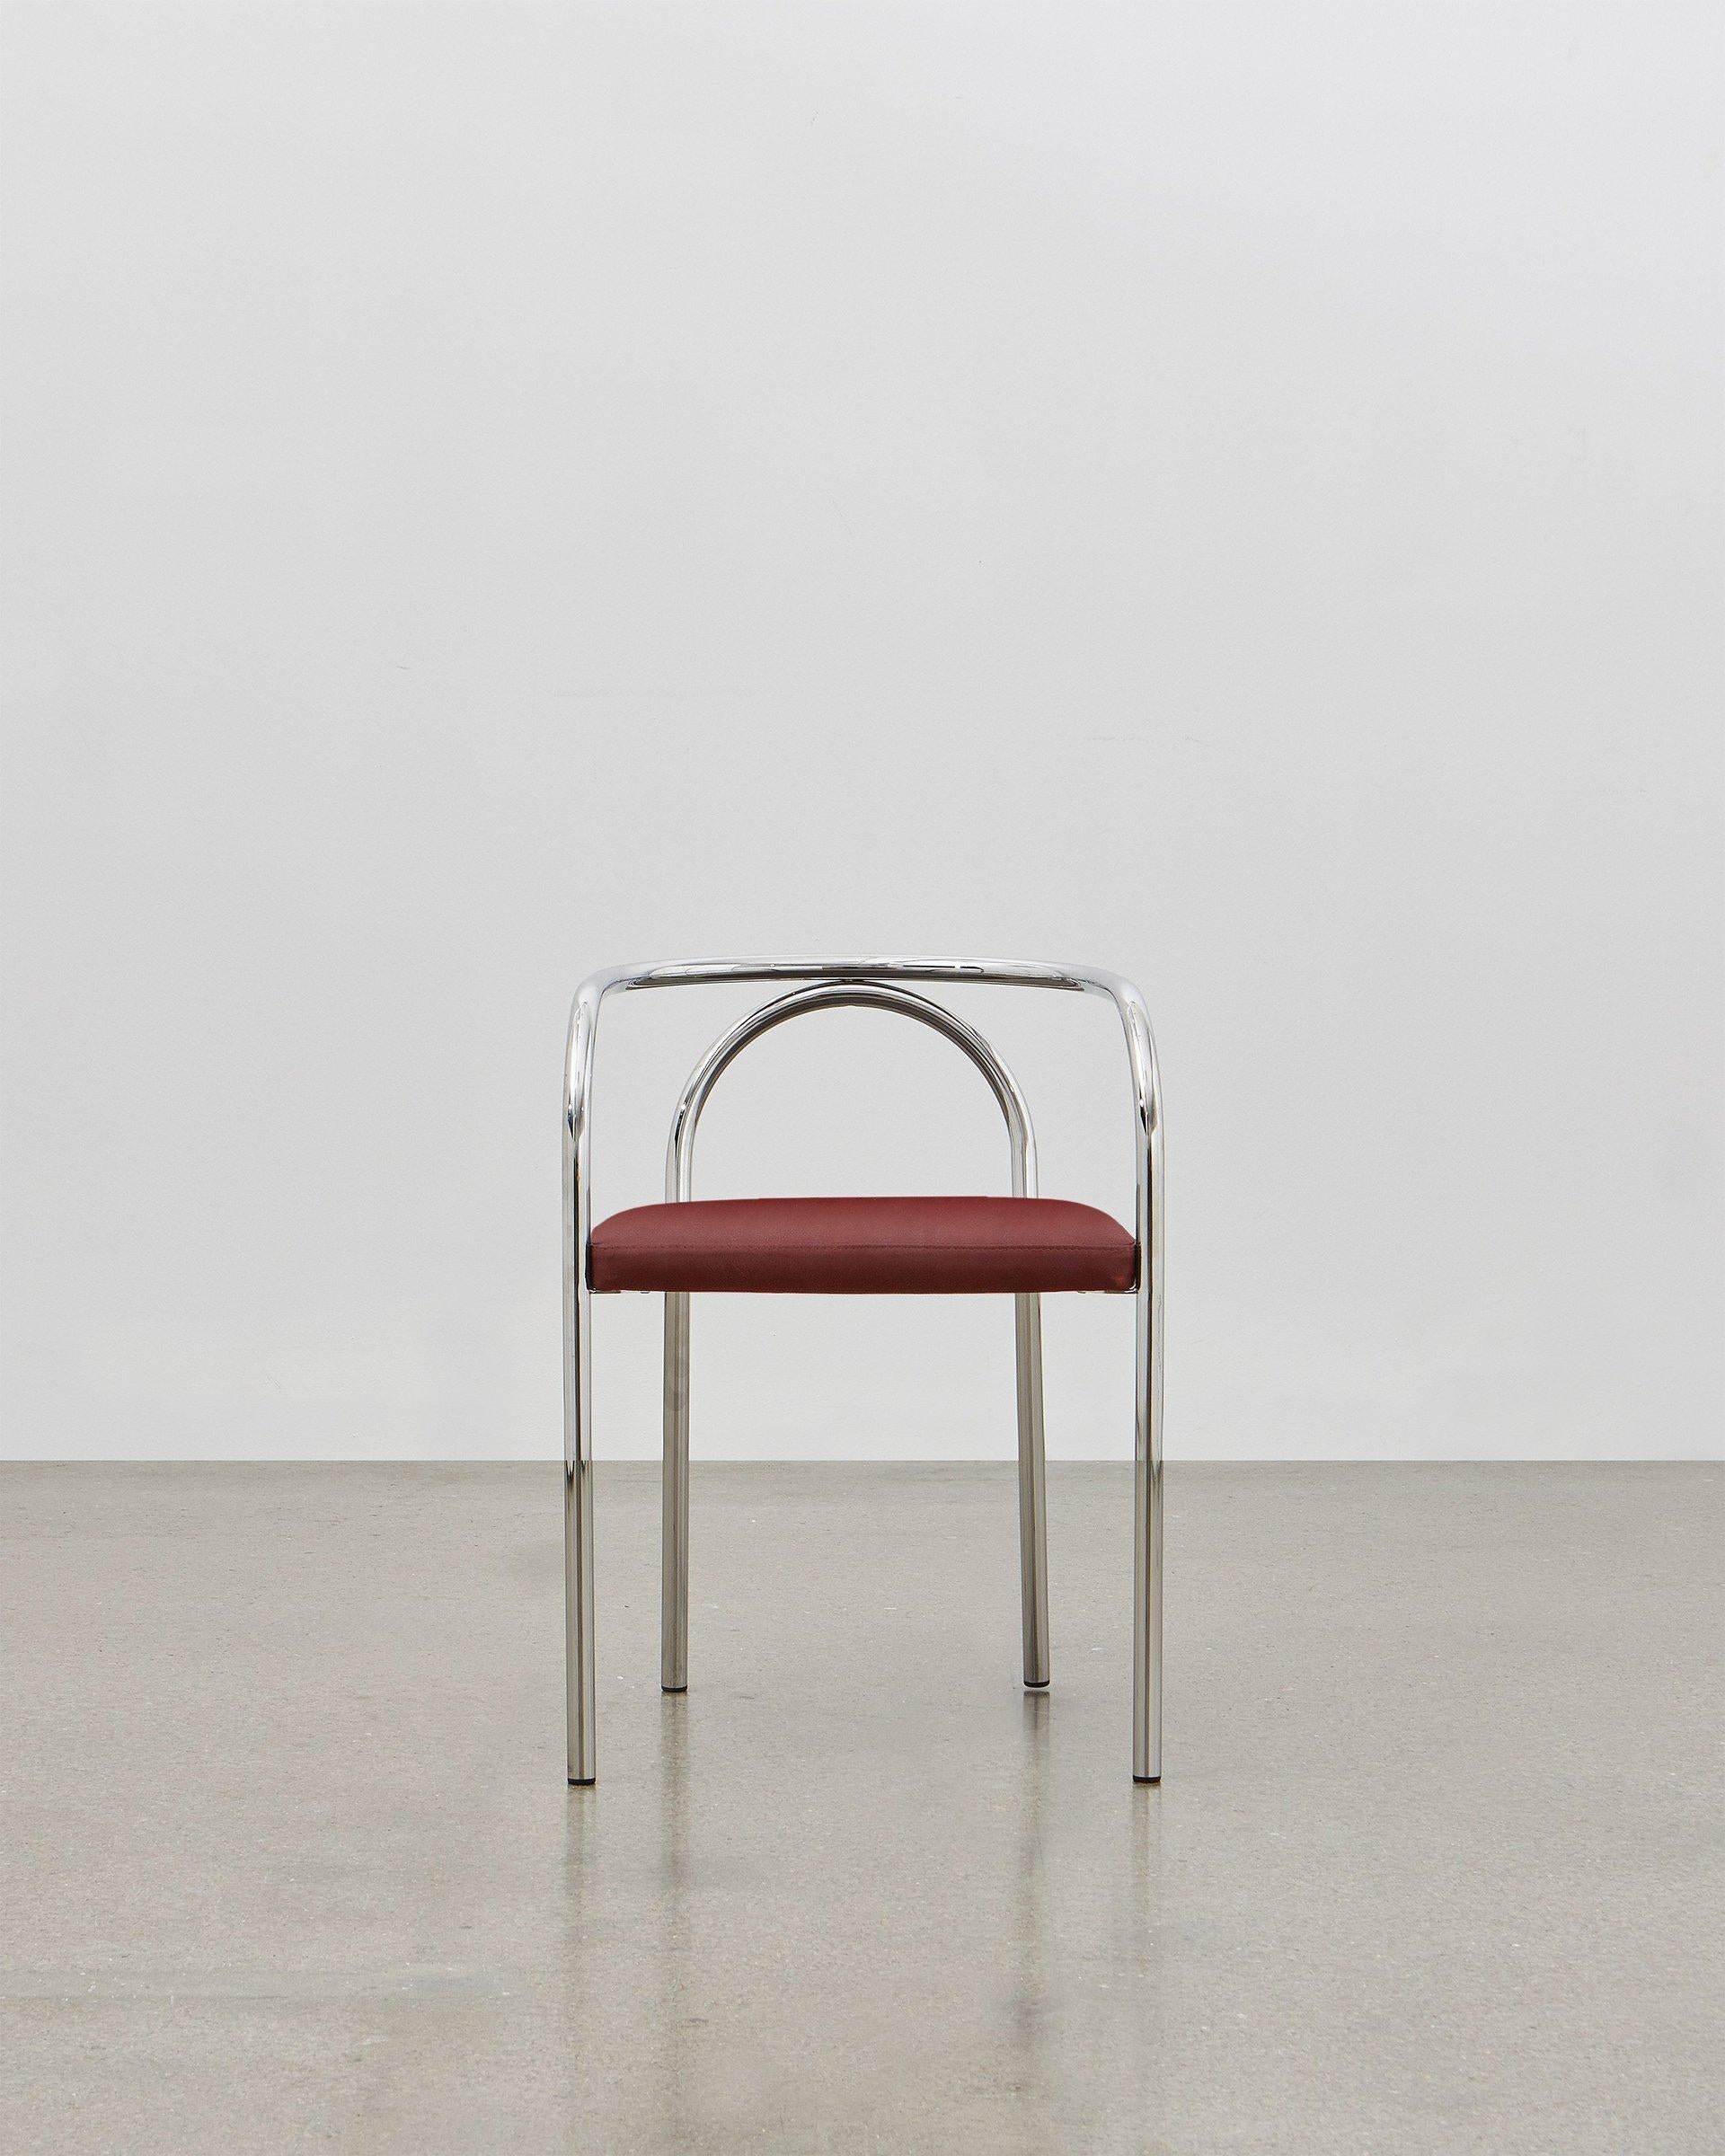 En créant la PH Chair, Poul Henningsen a cherché à réinventer un certain nombre de meubles classiques construits traditionnellement en bois, comme la chaise 